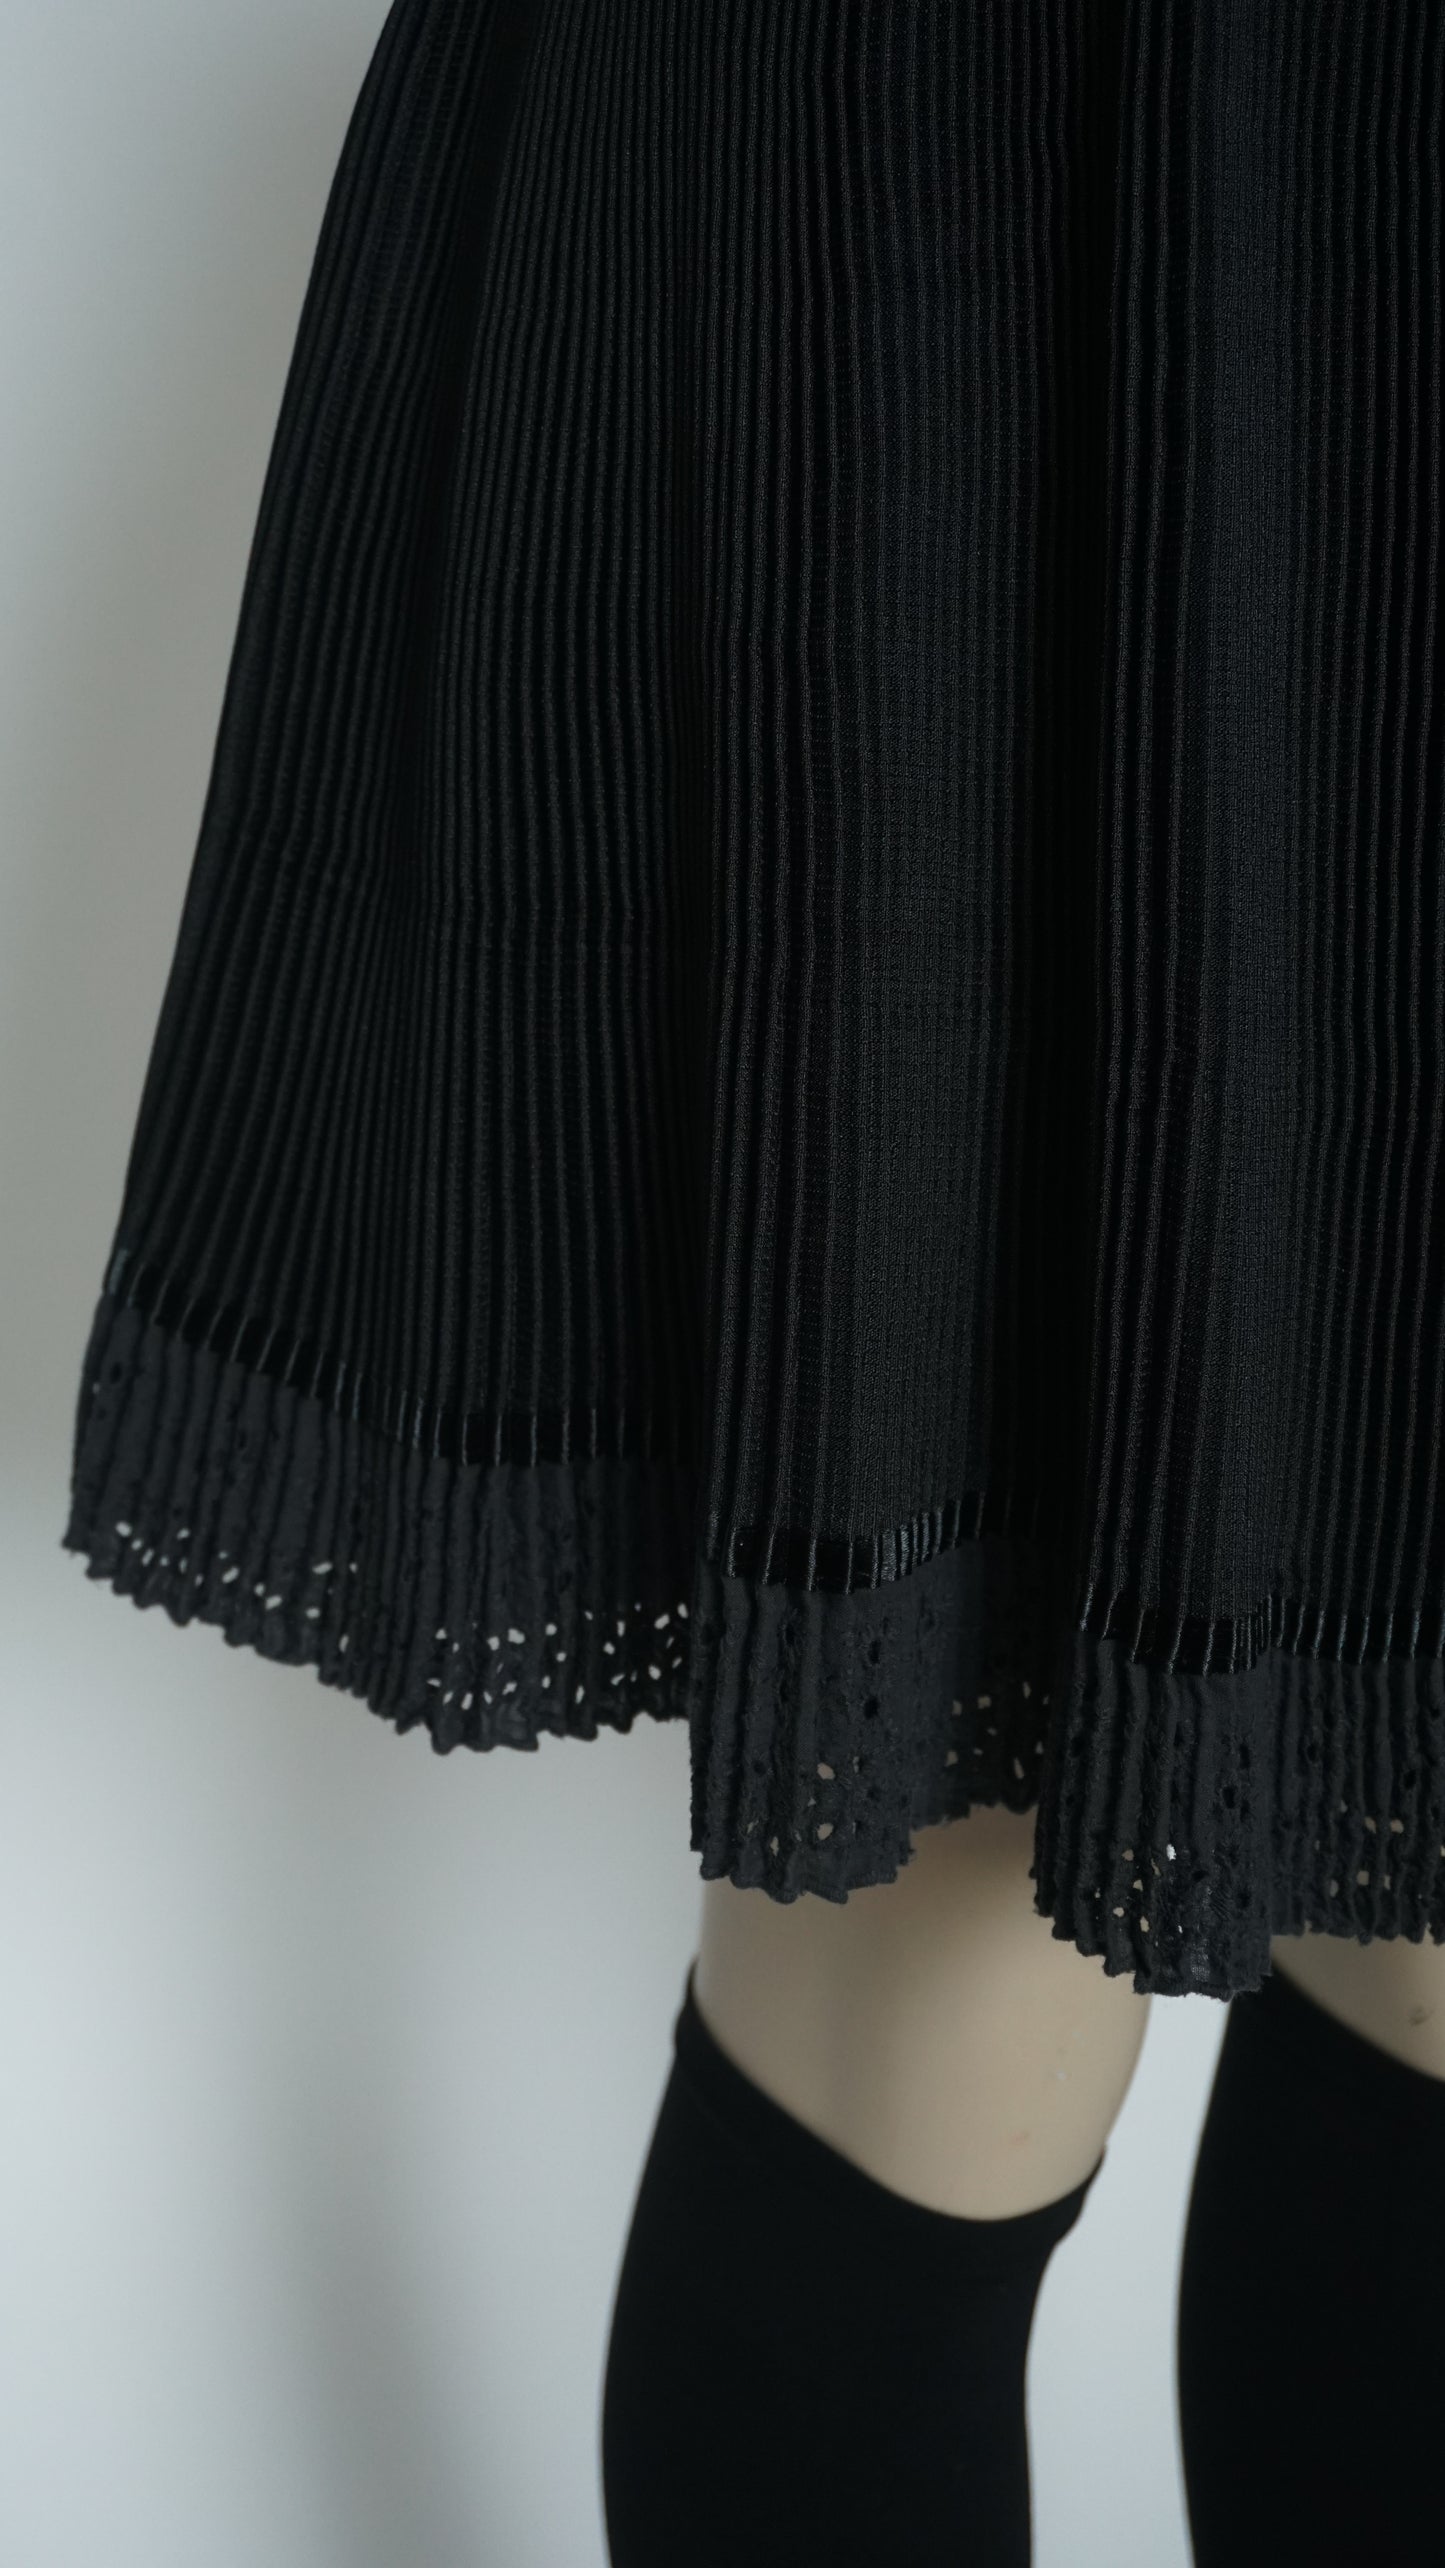 Black Skirt Lace Bottom